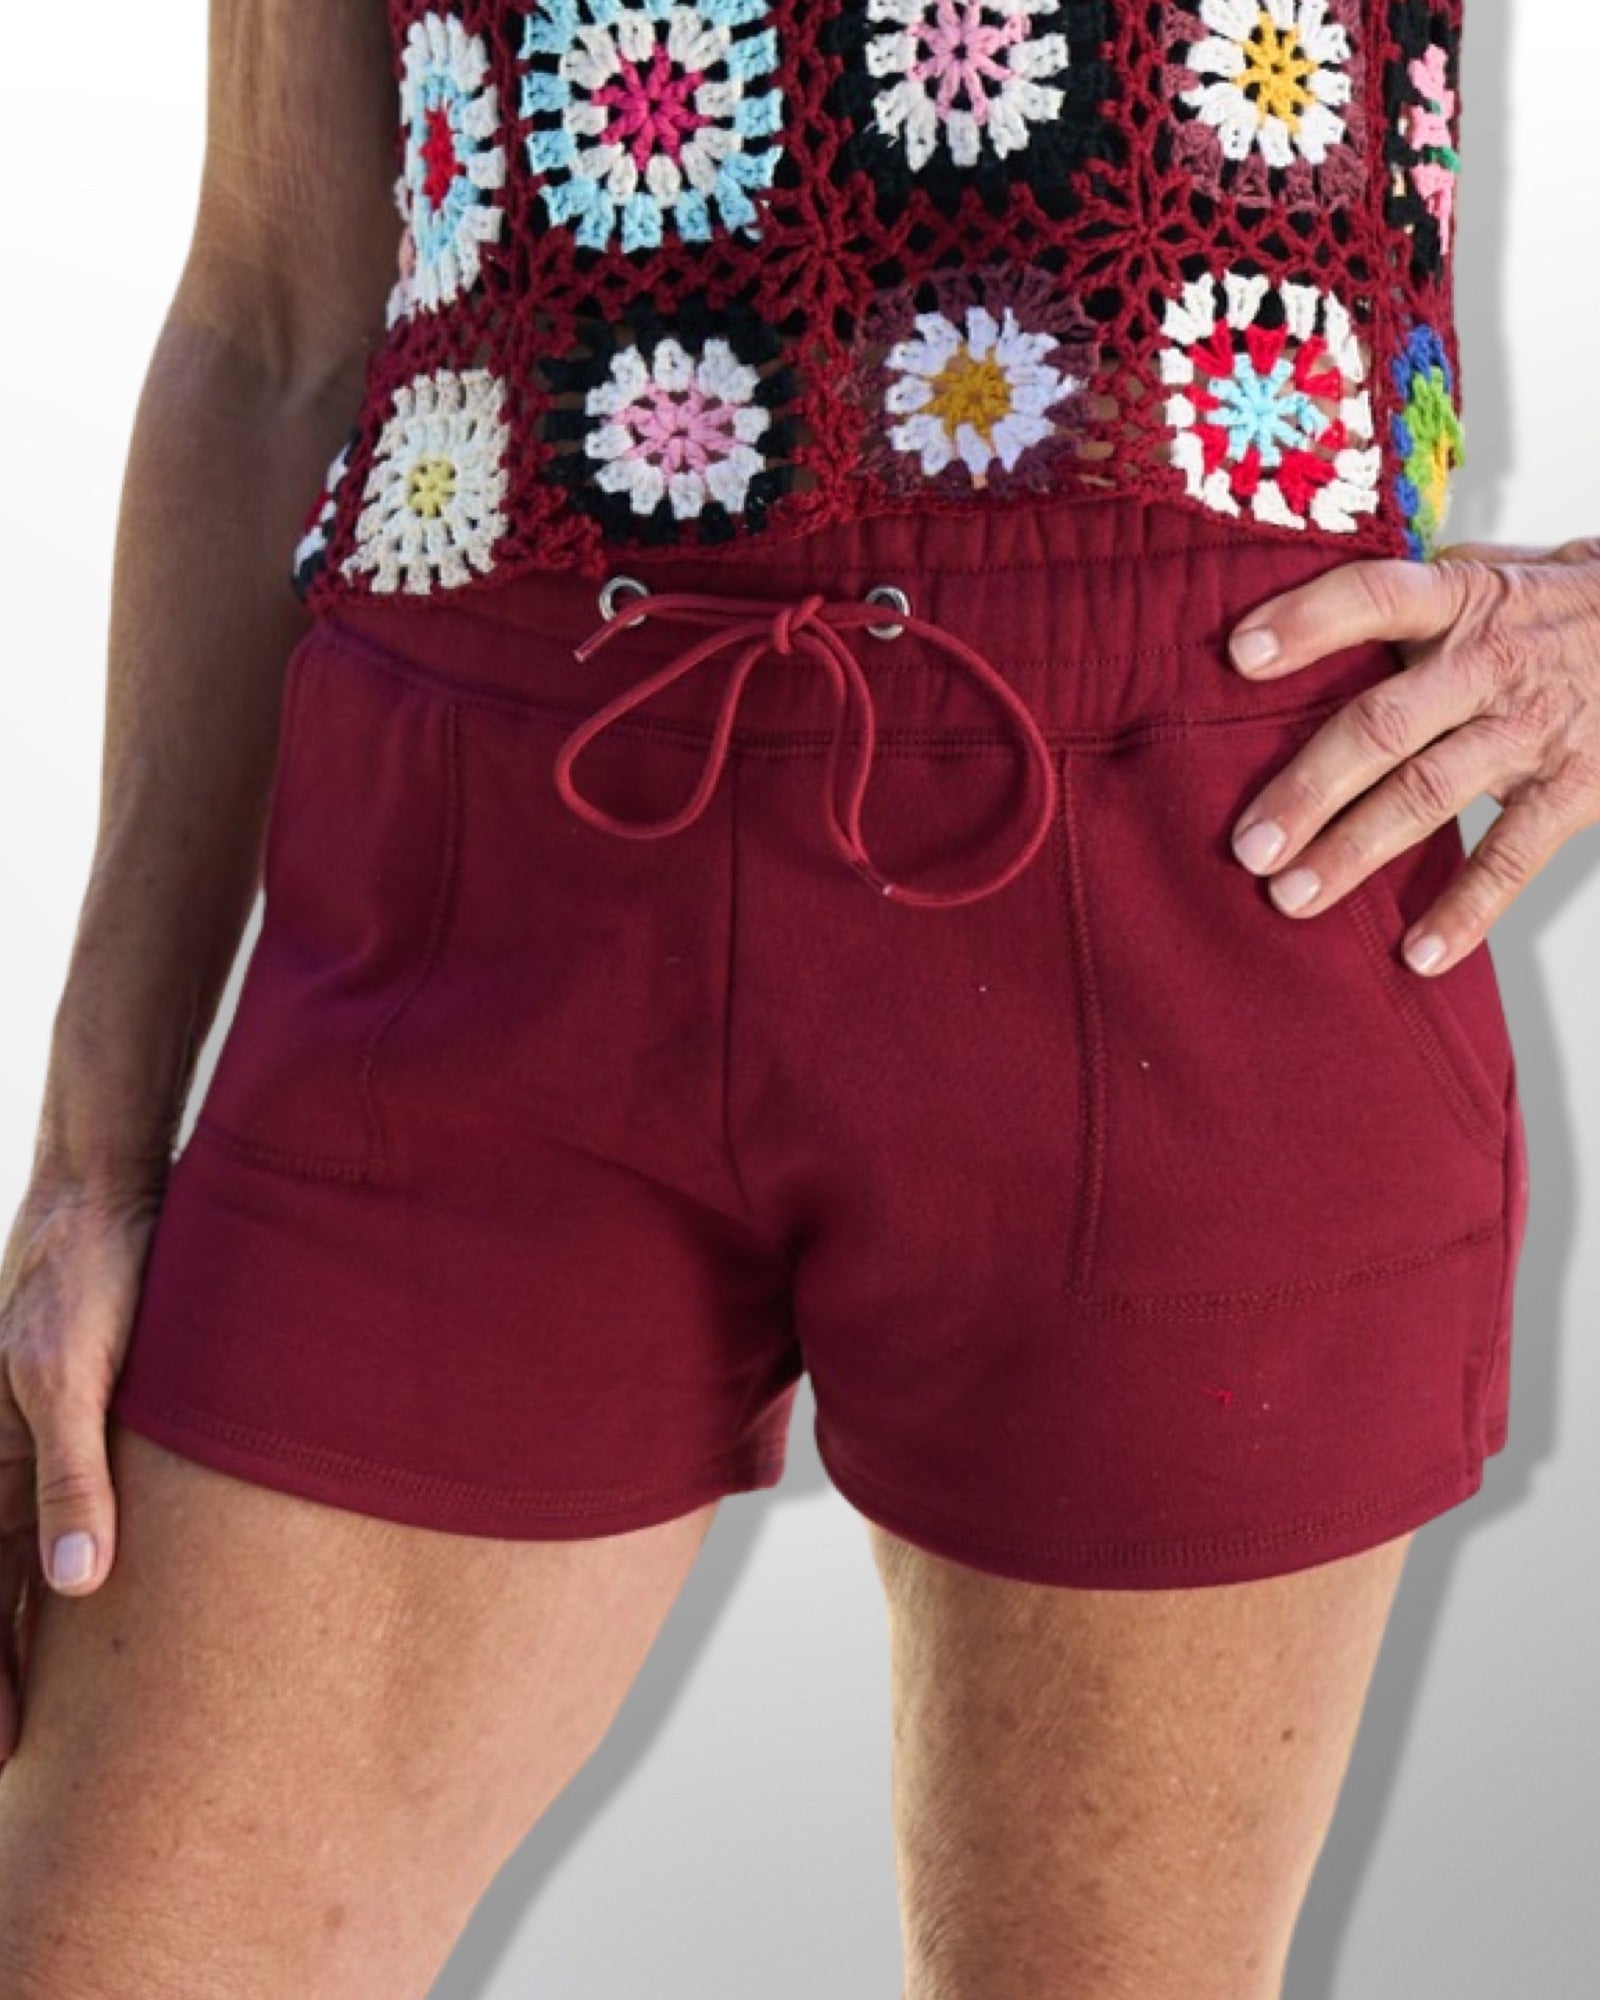 Maroon terry cloth shorts